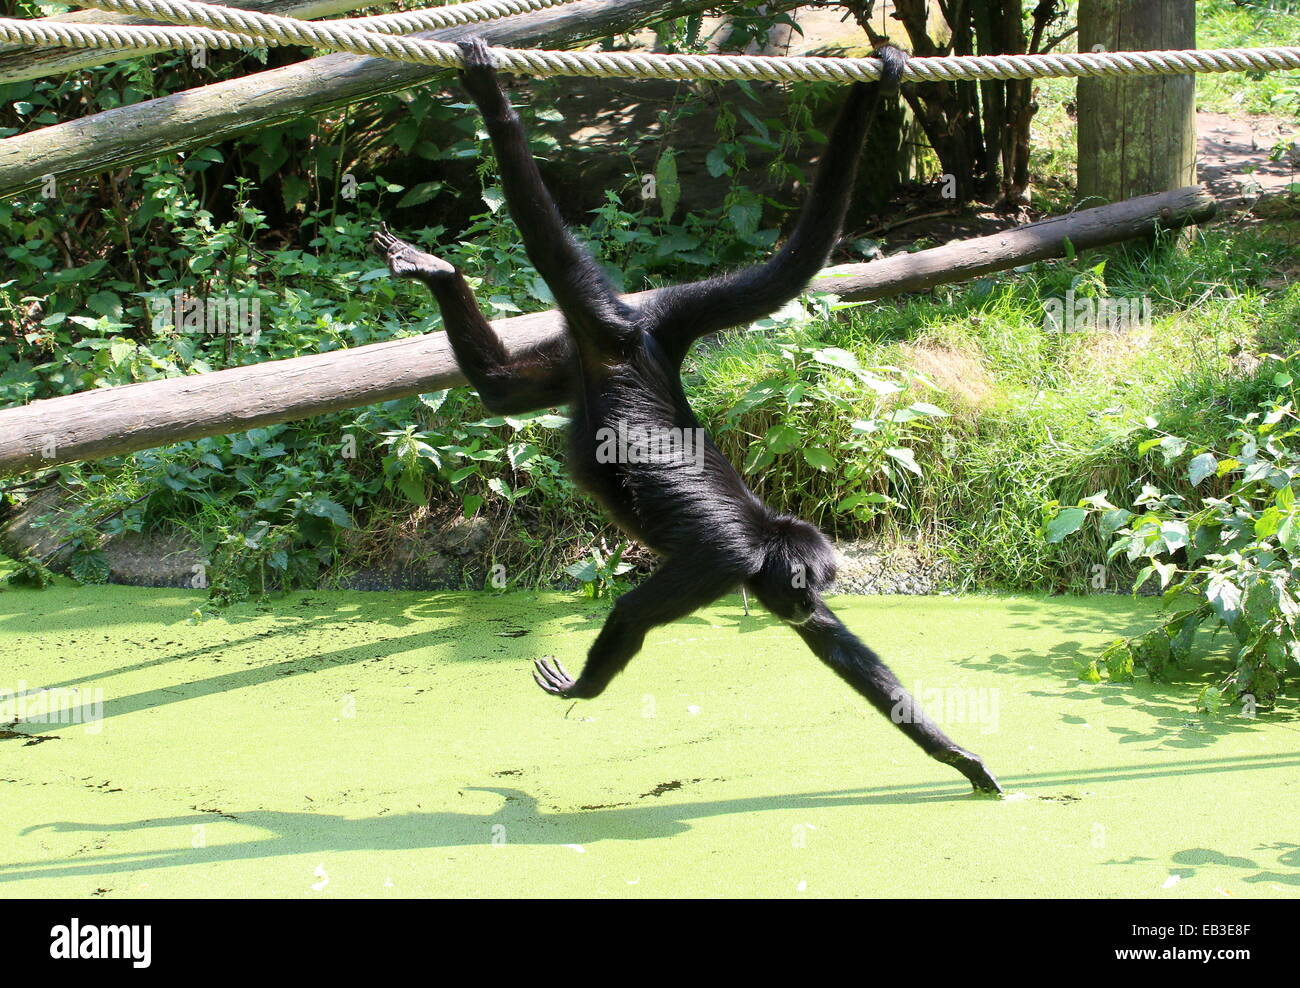 Cabeza negra colombiana mono araña (Ateles fusciceps) colgando de su cola prensil en un Zoo holandés, la recolección de frutas Foto de stock